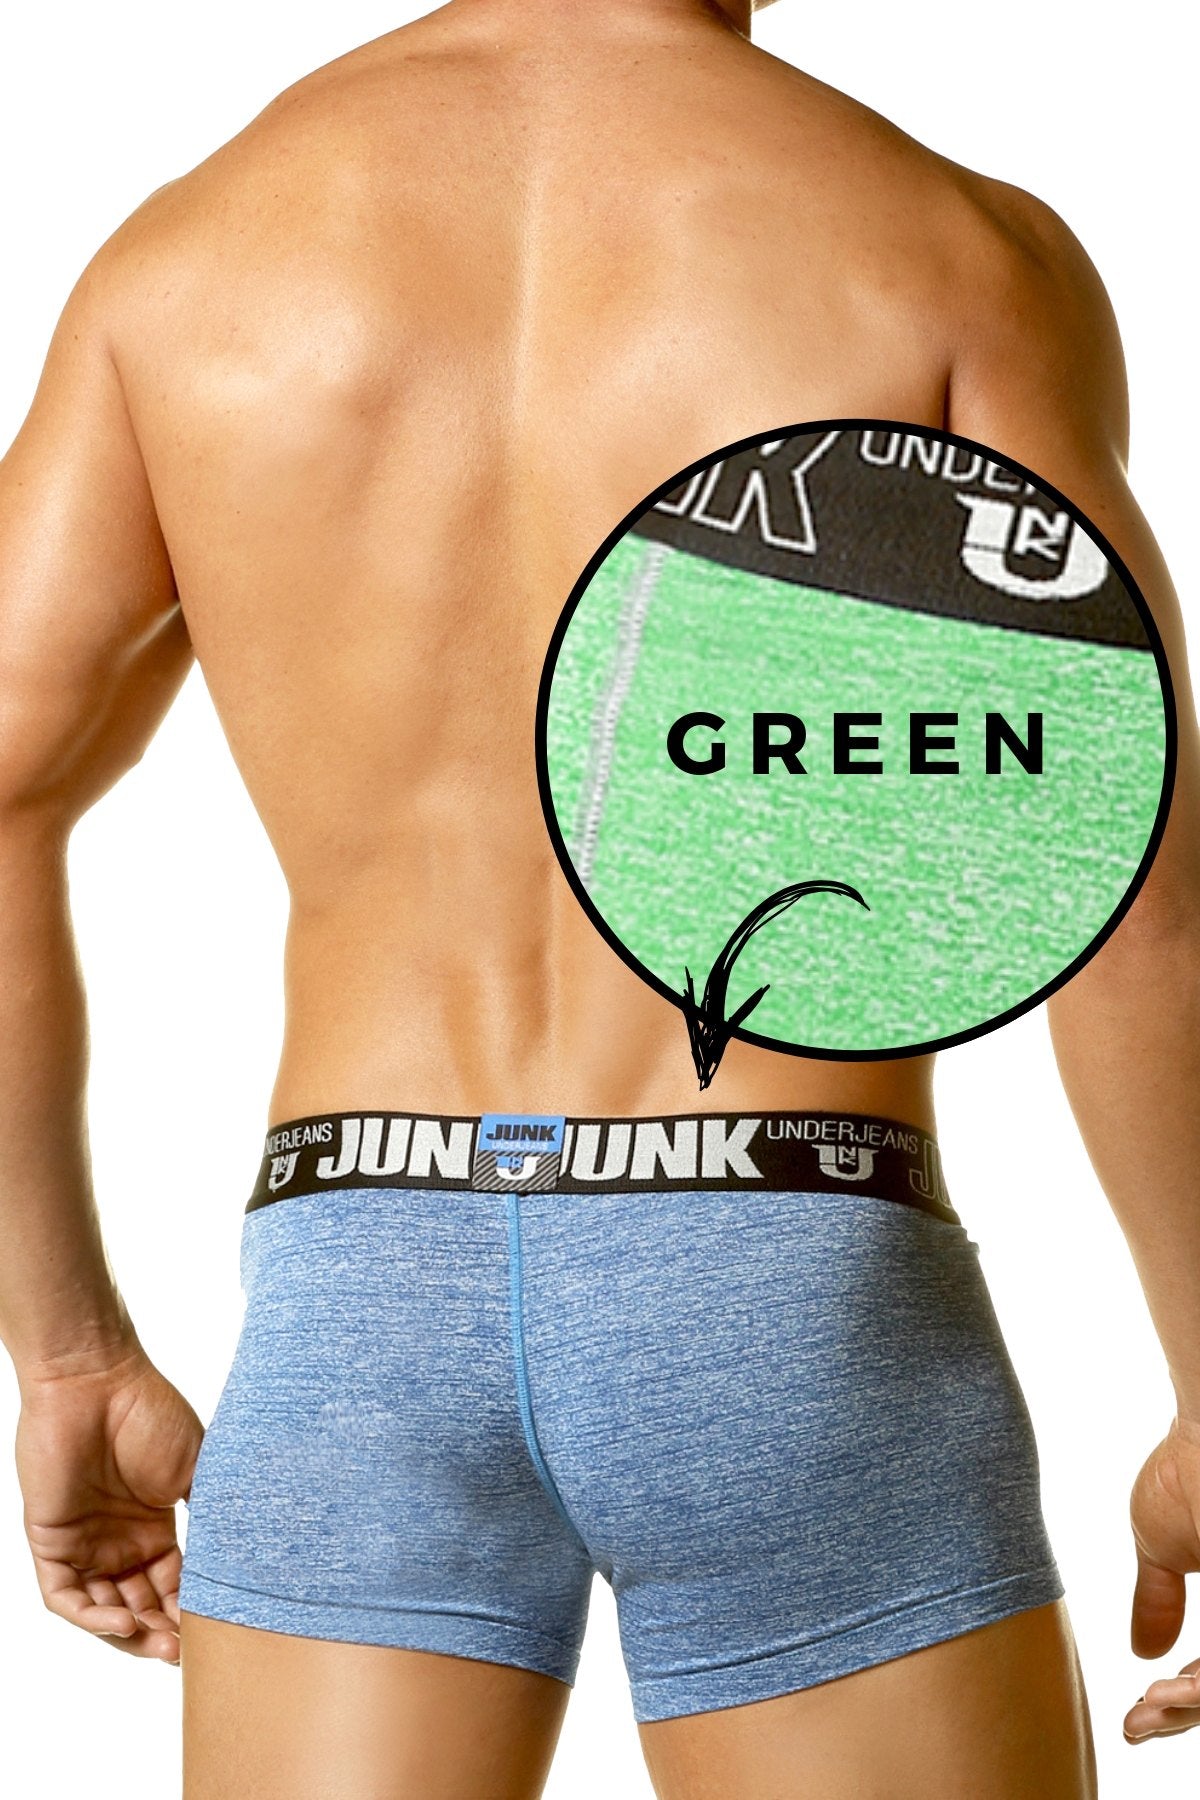 Junk Underjeans Green Sweat Trunk